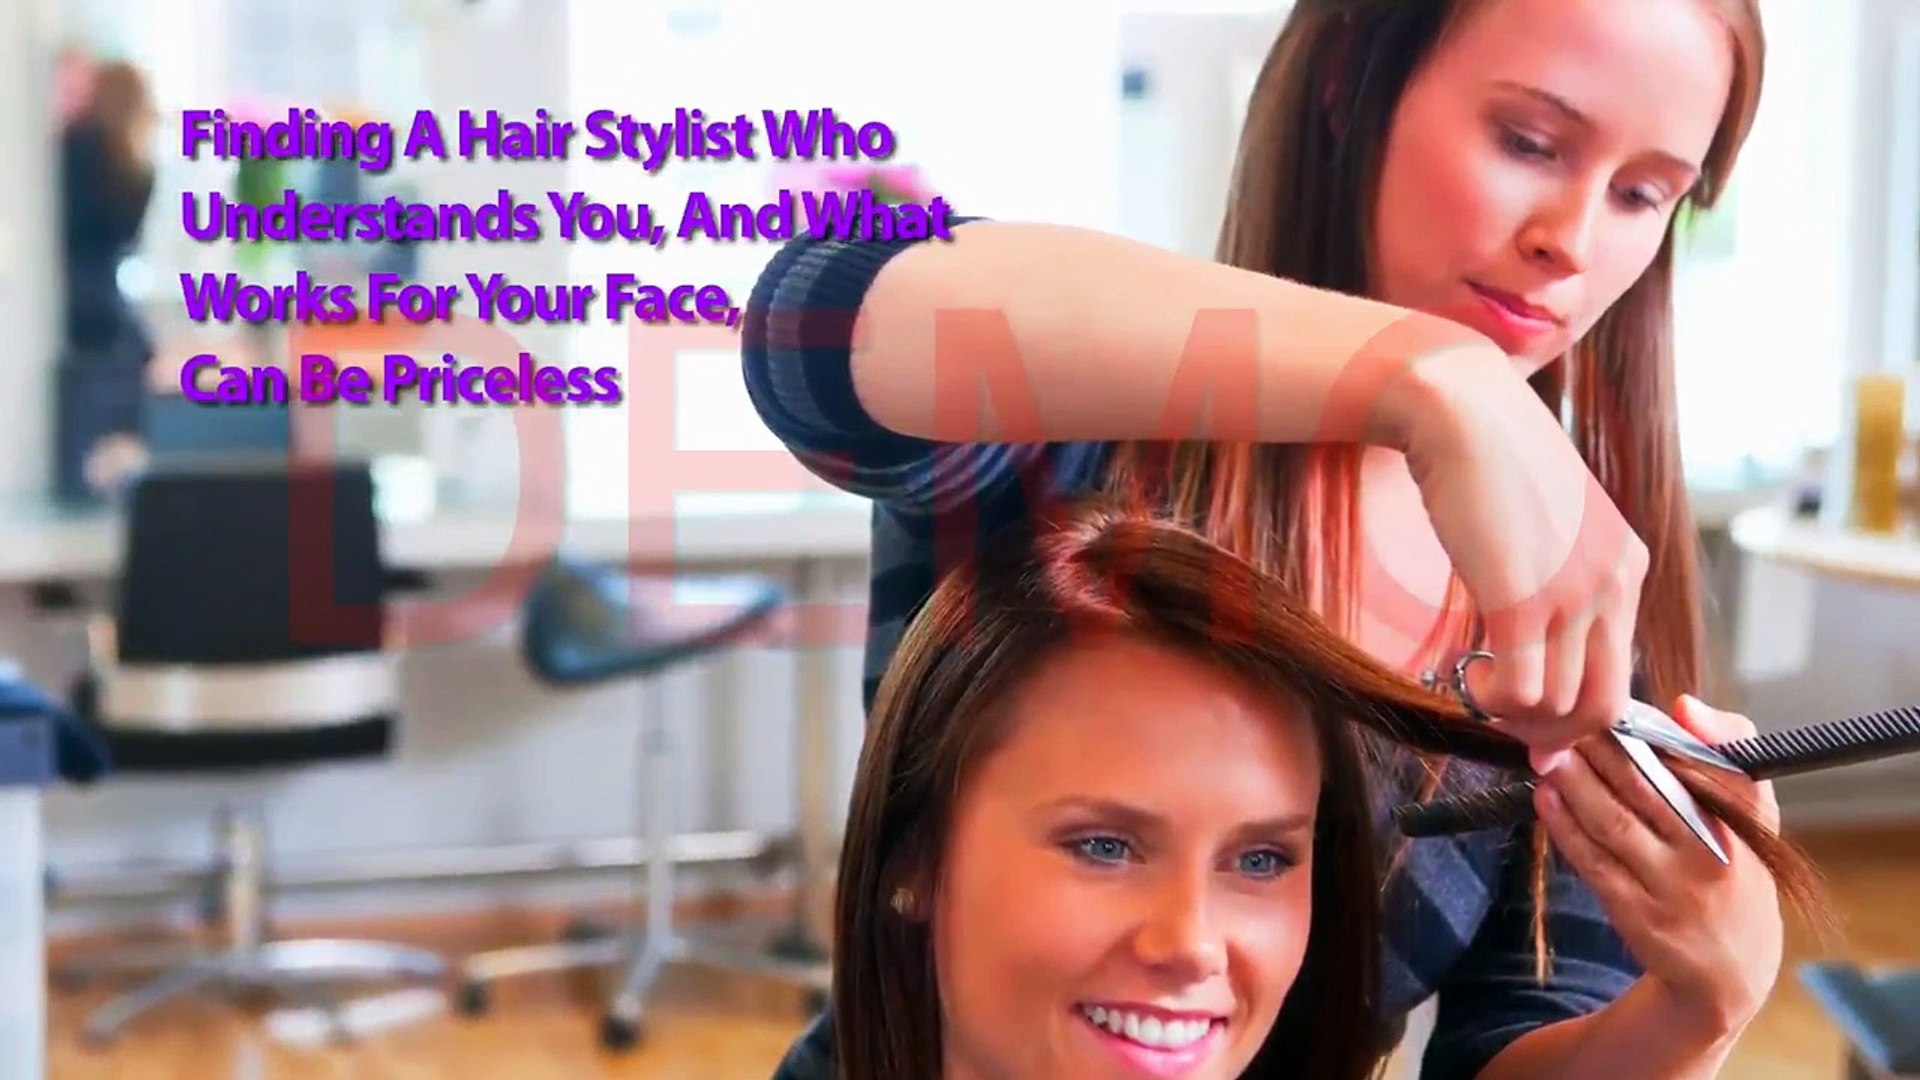 ⁣Hair Salon - Hair Salons Near Me - Hairstyles - Hair Salon Video by Largs Videos